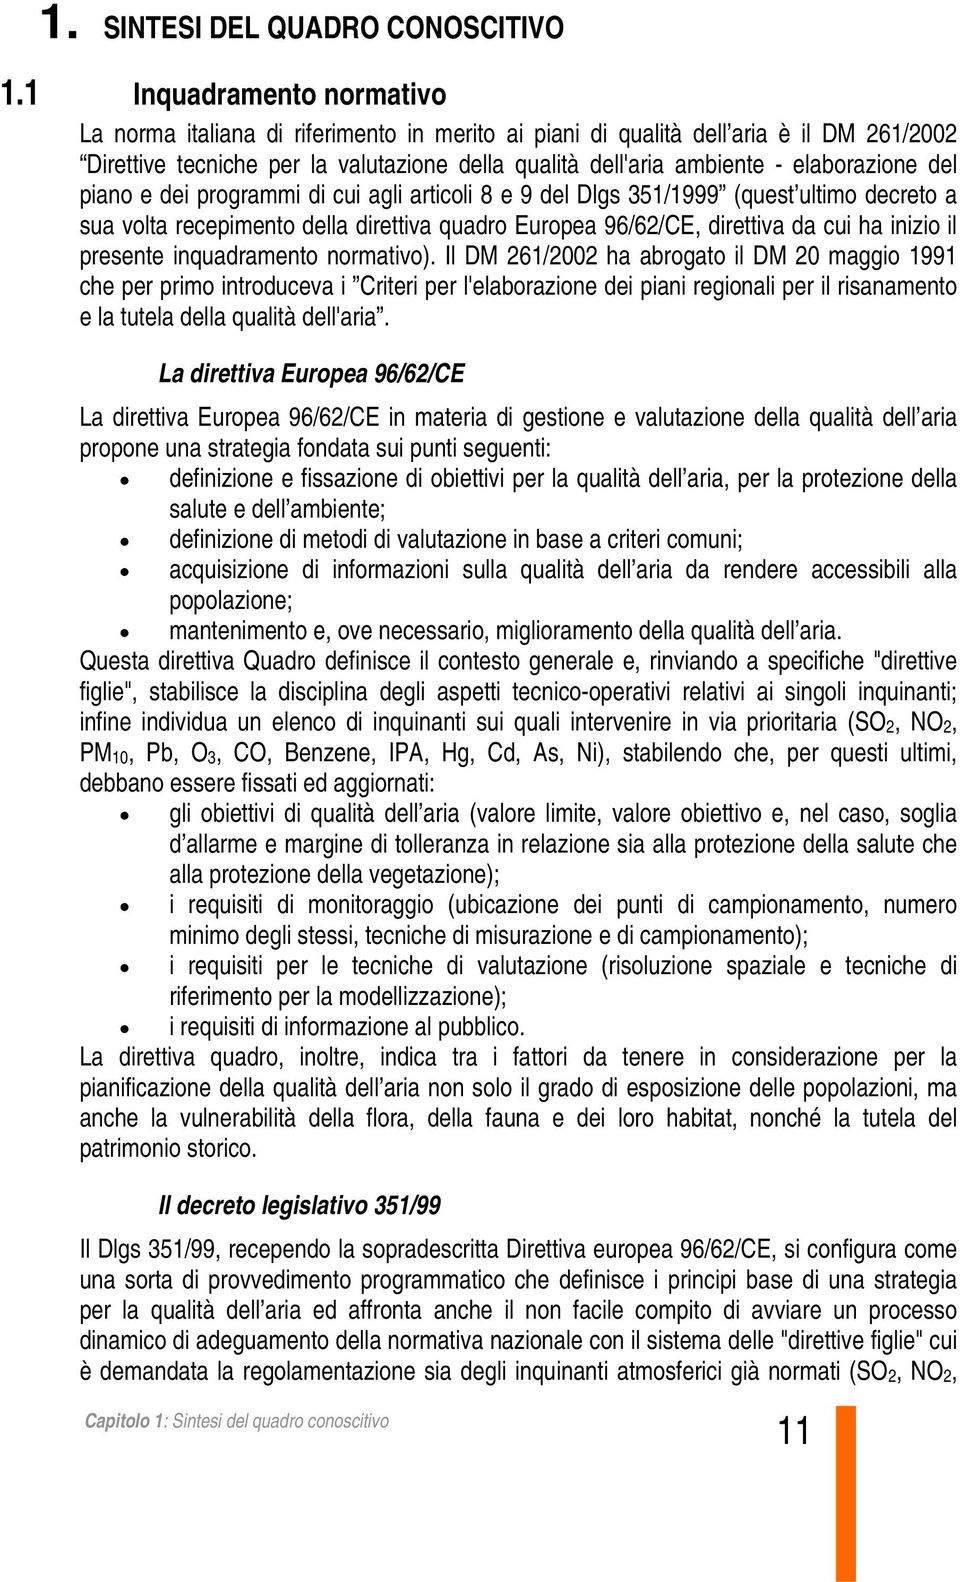 elaborazione del piano e dei programmi di cui agli articoli 8 e 9 del Dlgs 351/1999 (quest ultimo decreto a sua volta recepimento della direttiva quadro Europea 96/62/CE, direttiva da cui ha inizio